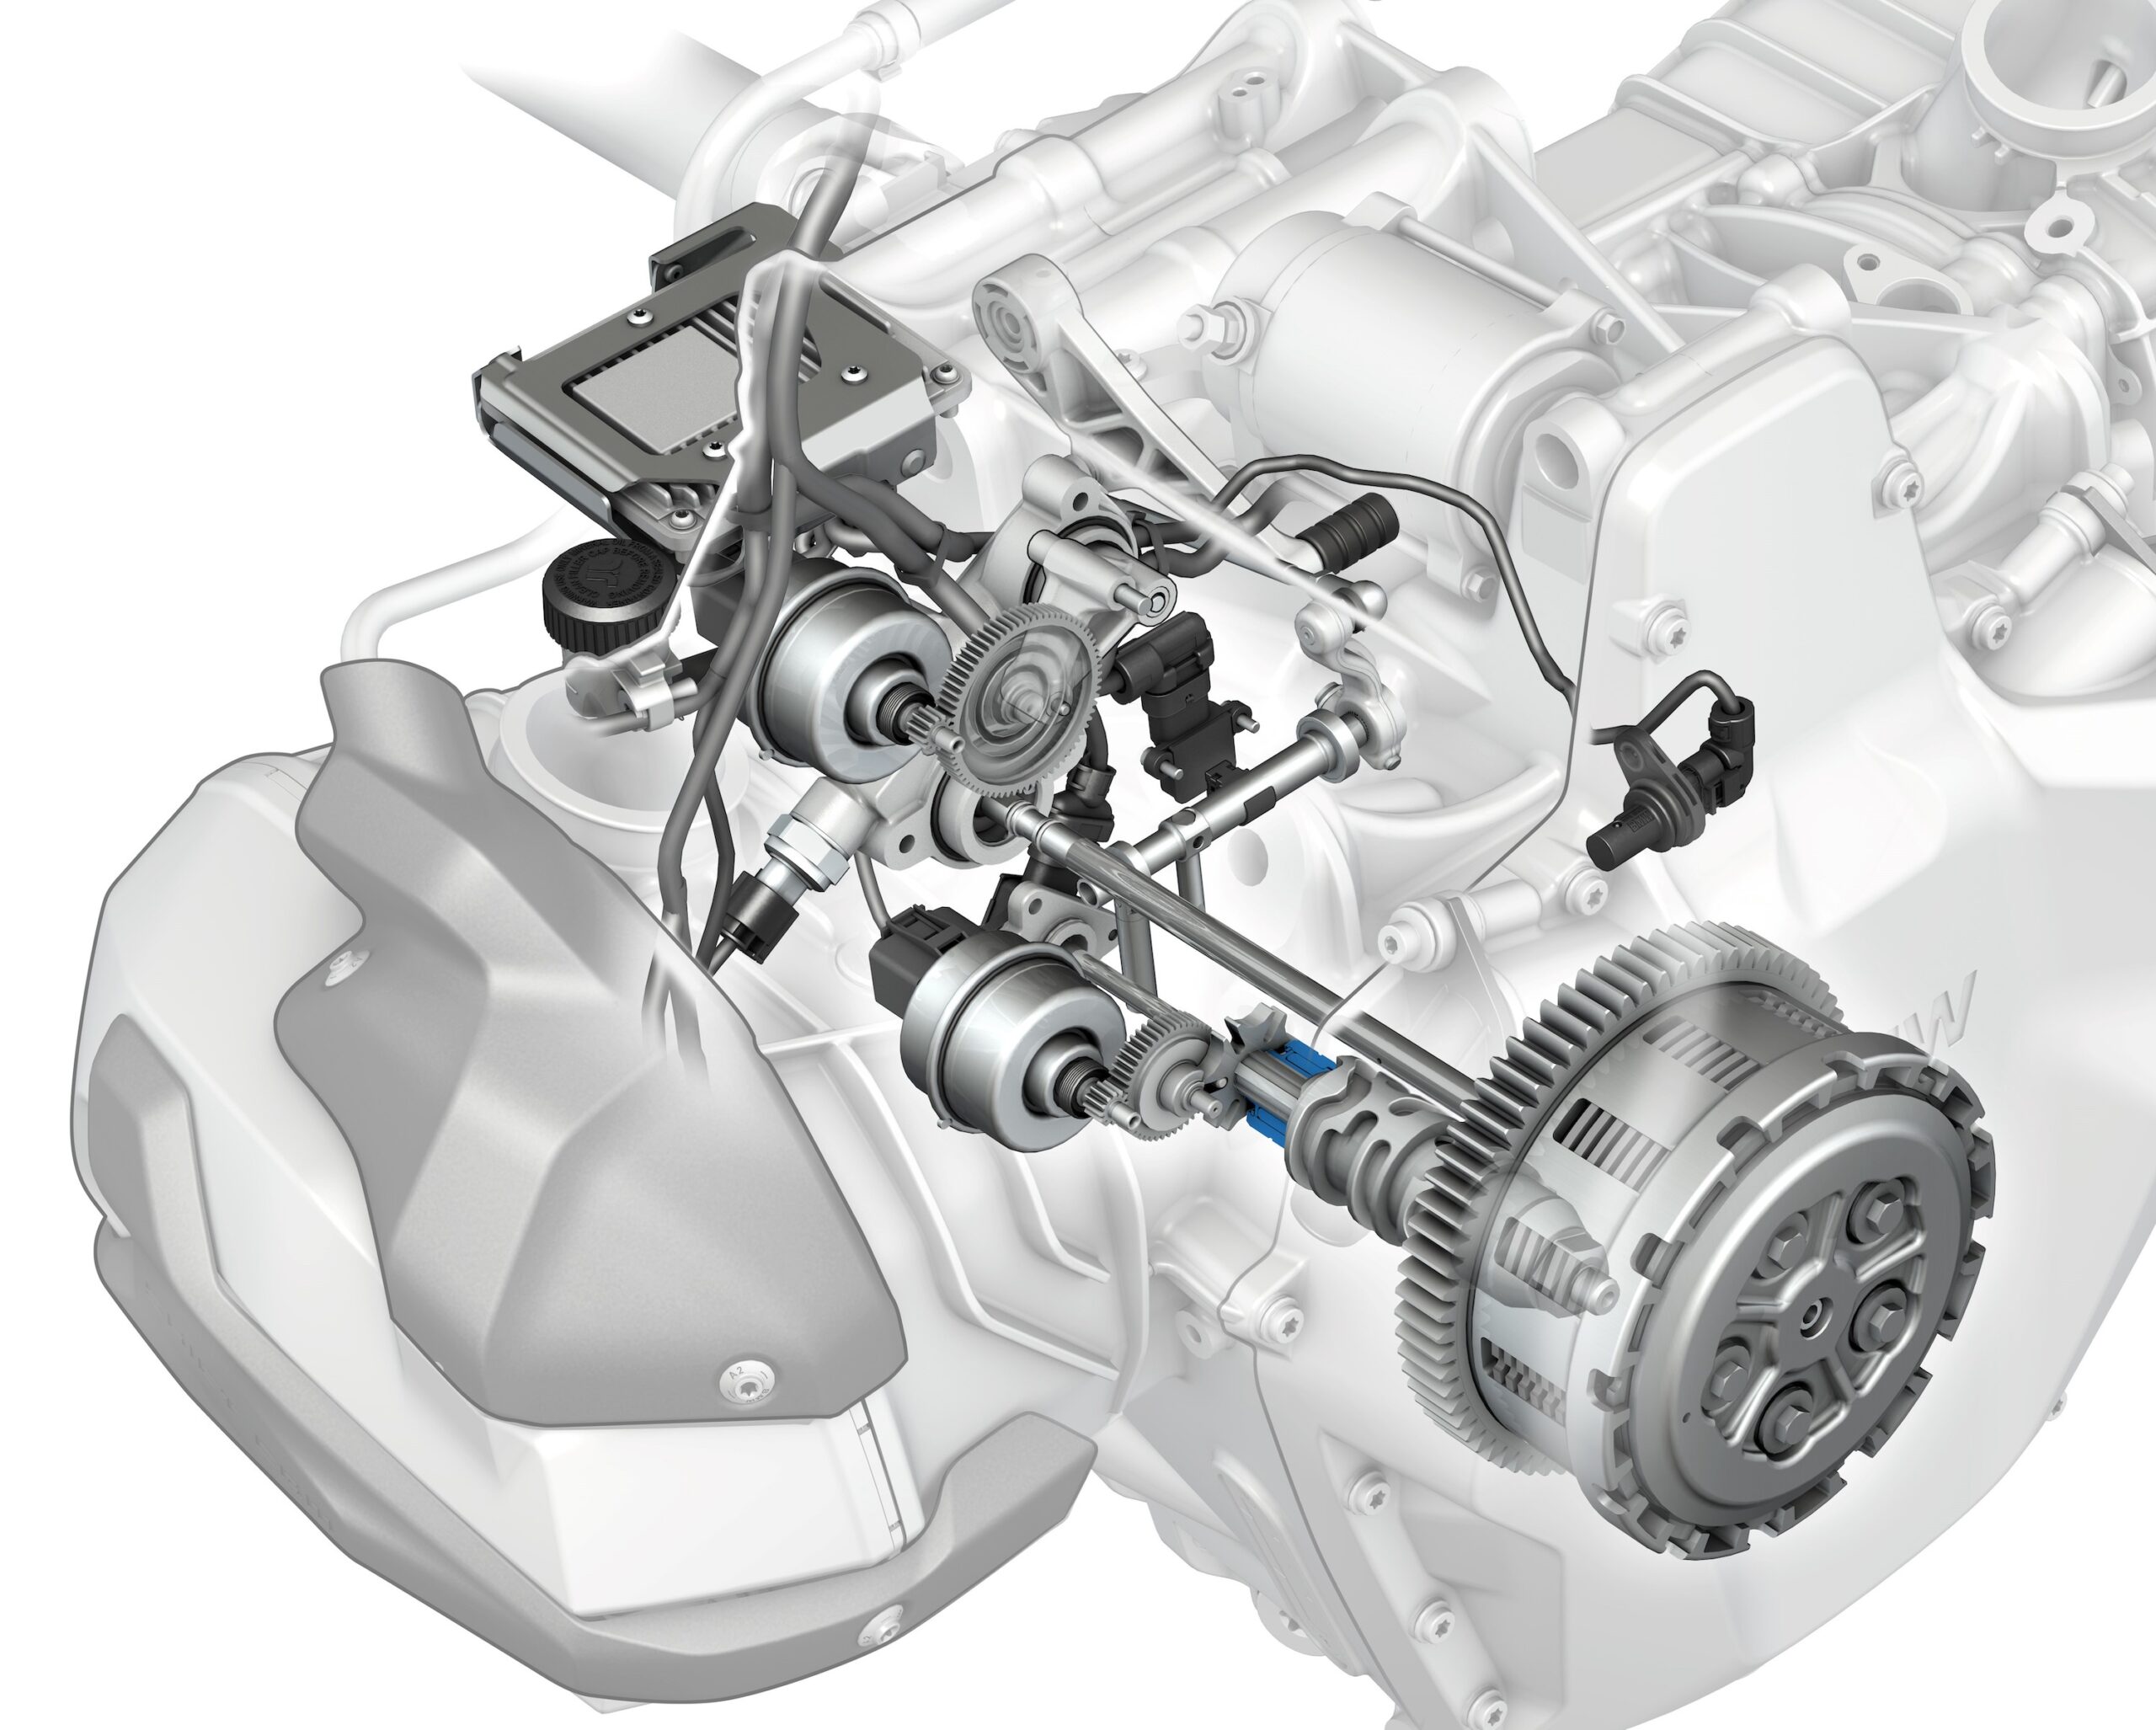 Das halbautomatische Getriebe von BMW wird in vielen weiteren Motorrädern zu finden sein